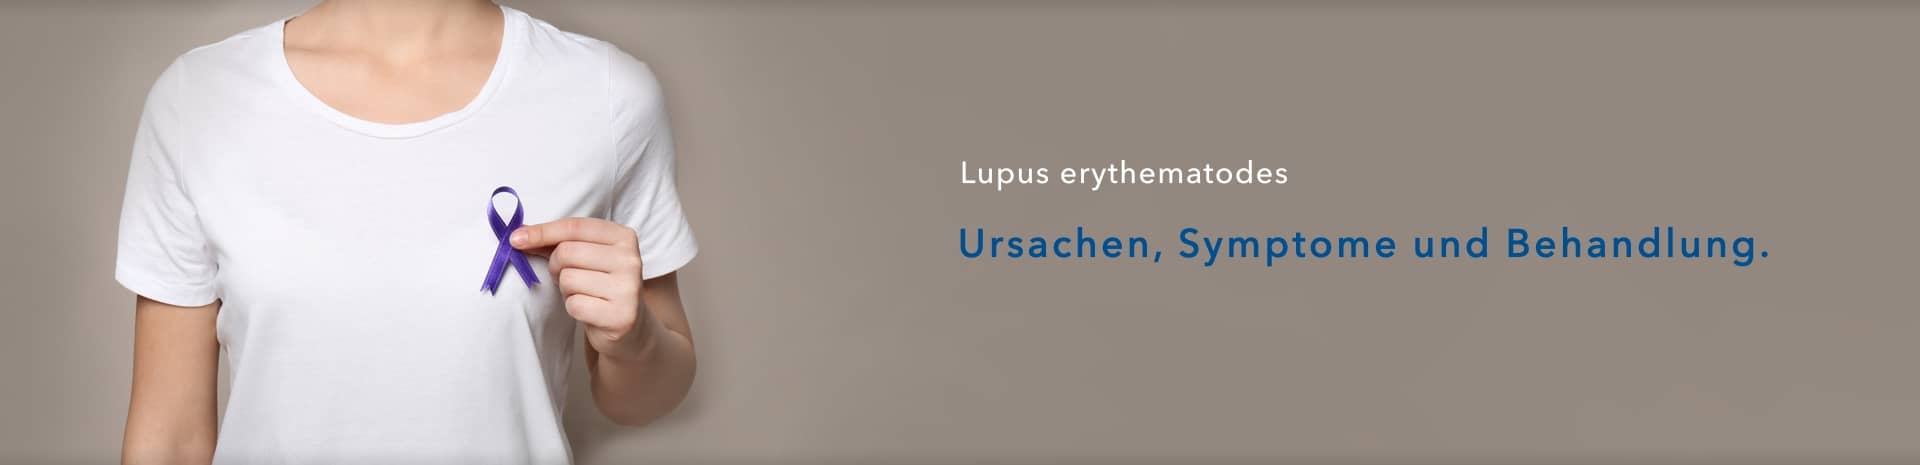 Lupus erythematodes: Ursachen, Symptome und Behandlungen